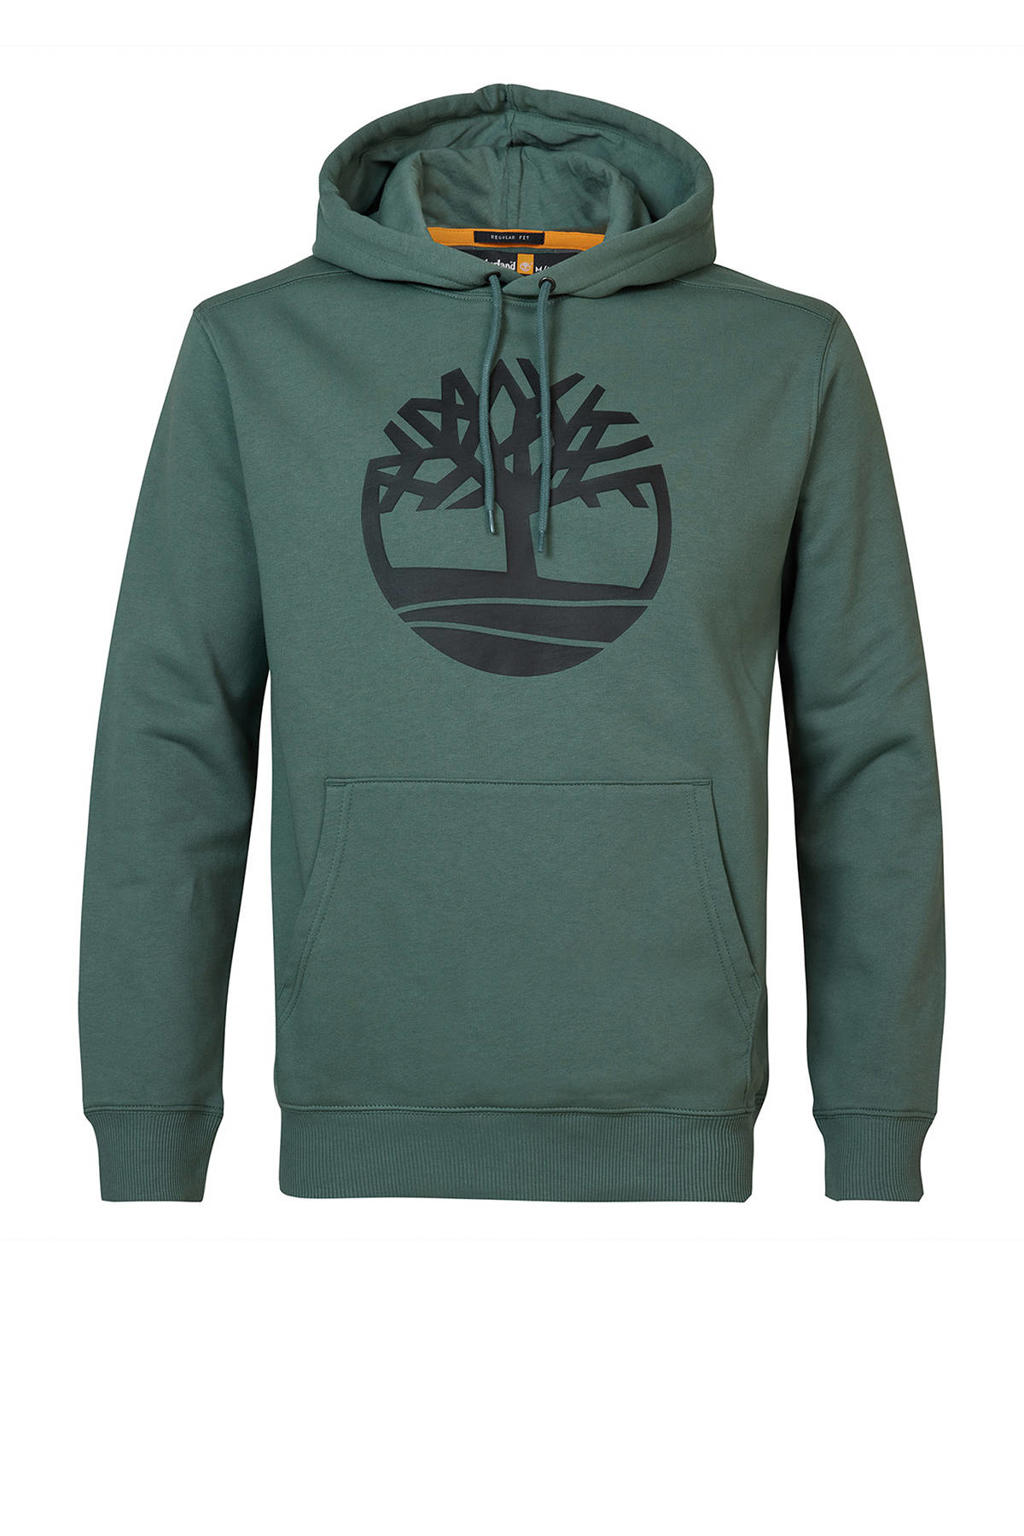 Timberland hoodie met logo groen